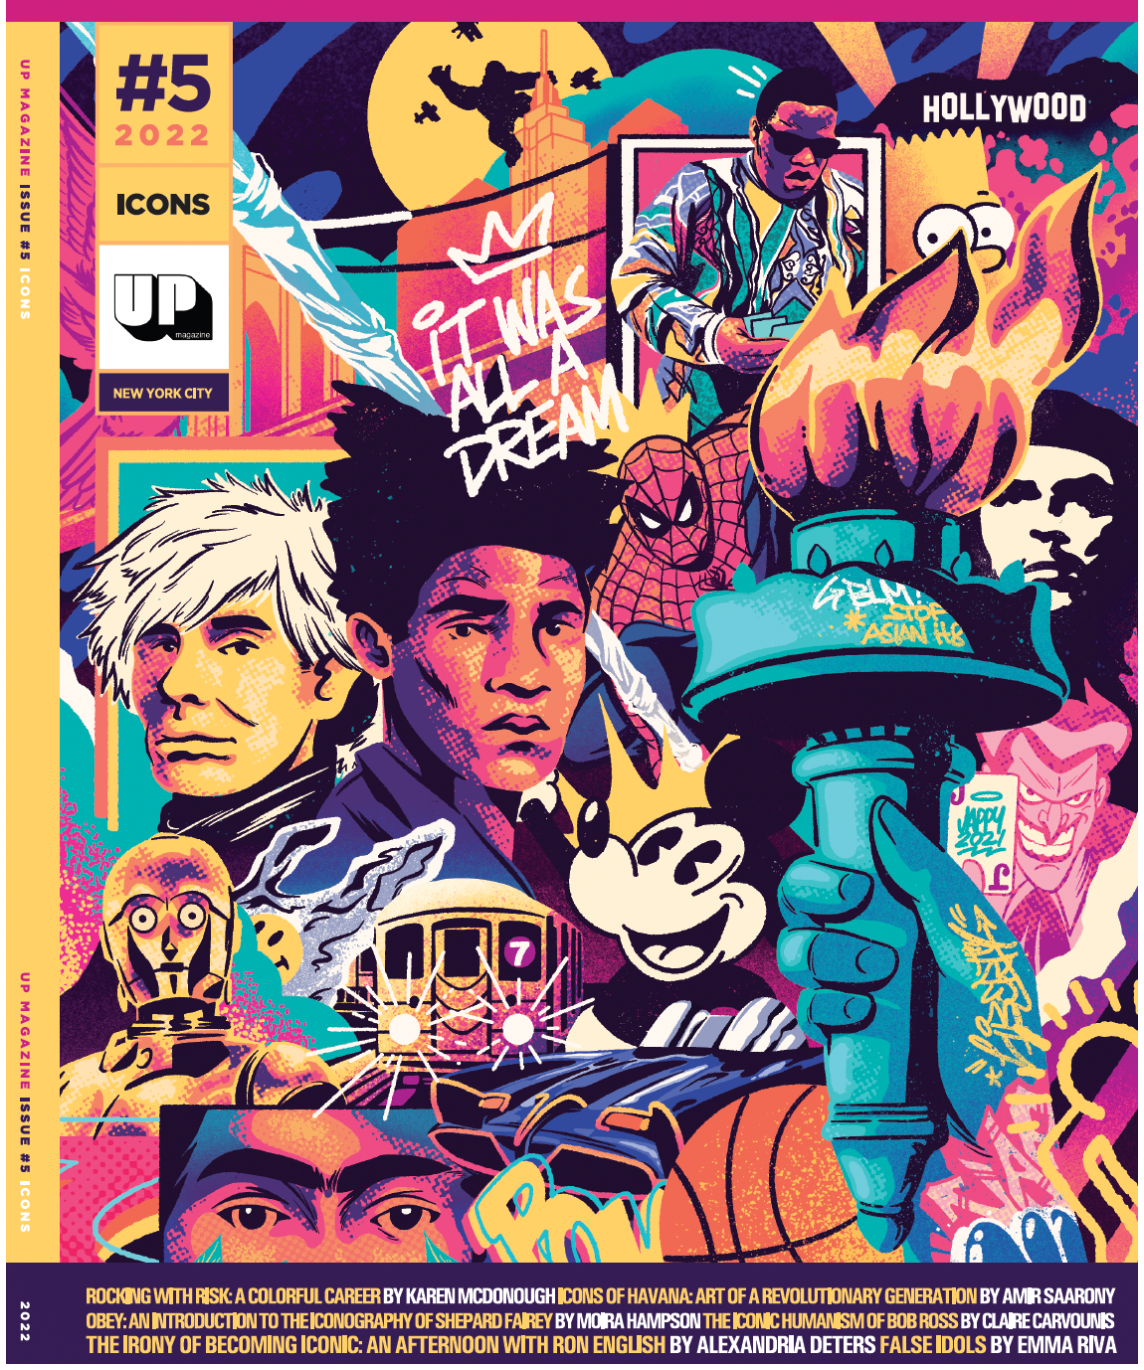 UP Magazine Issue 5: Icons